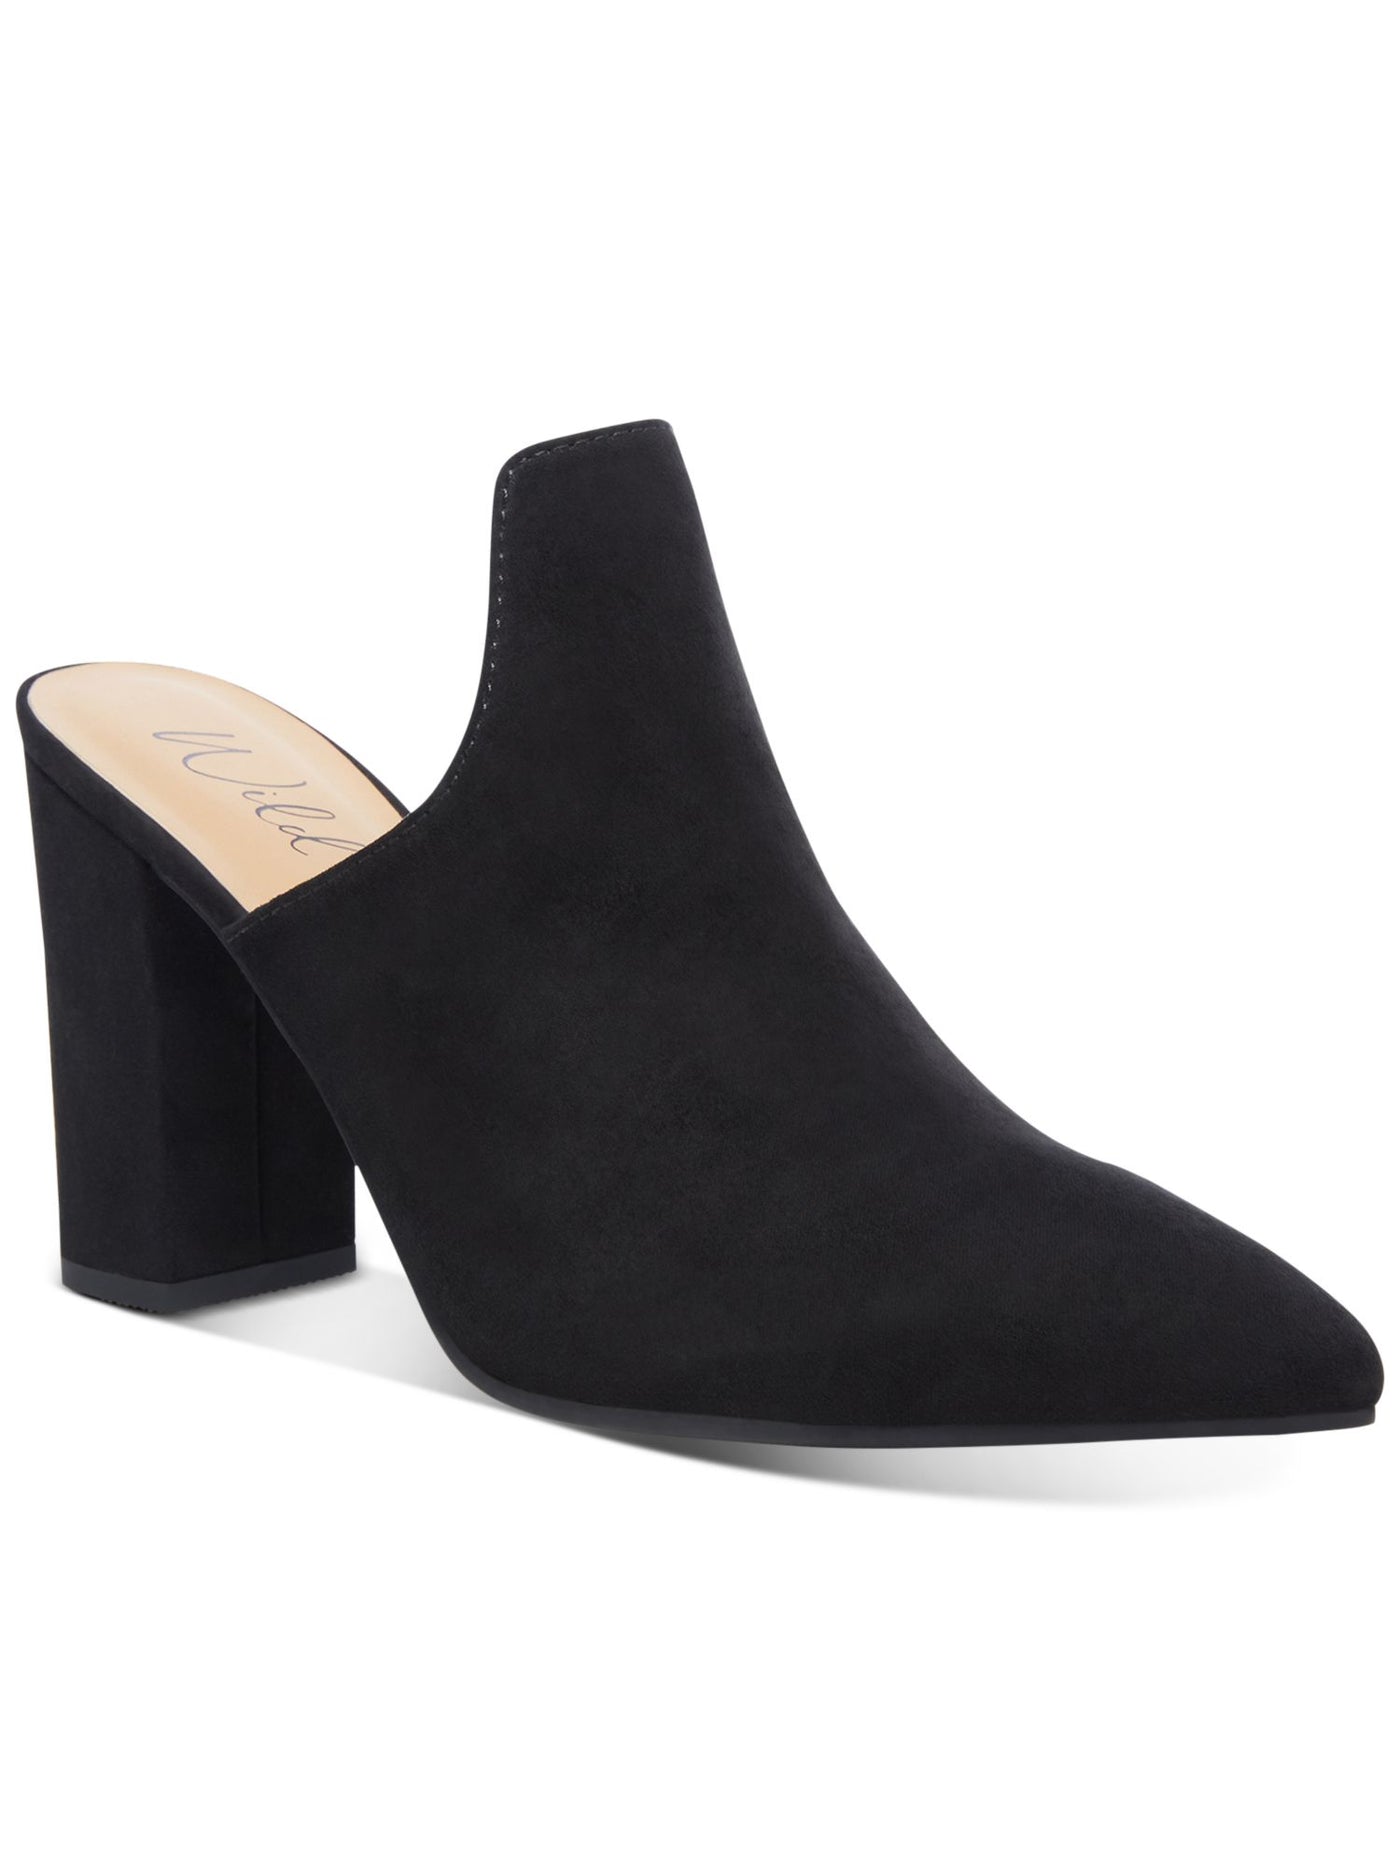 WILD PAIR Womens Black Extended Vamp Carlita Pointed Toe Block Heel Slip On Heeled Mules Shoes 6 M